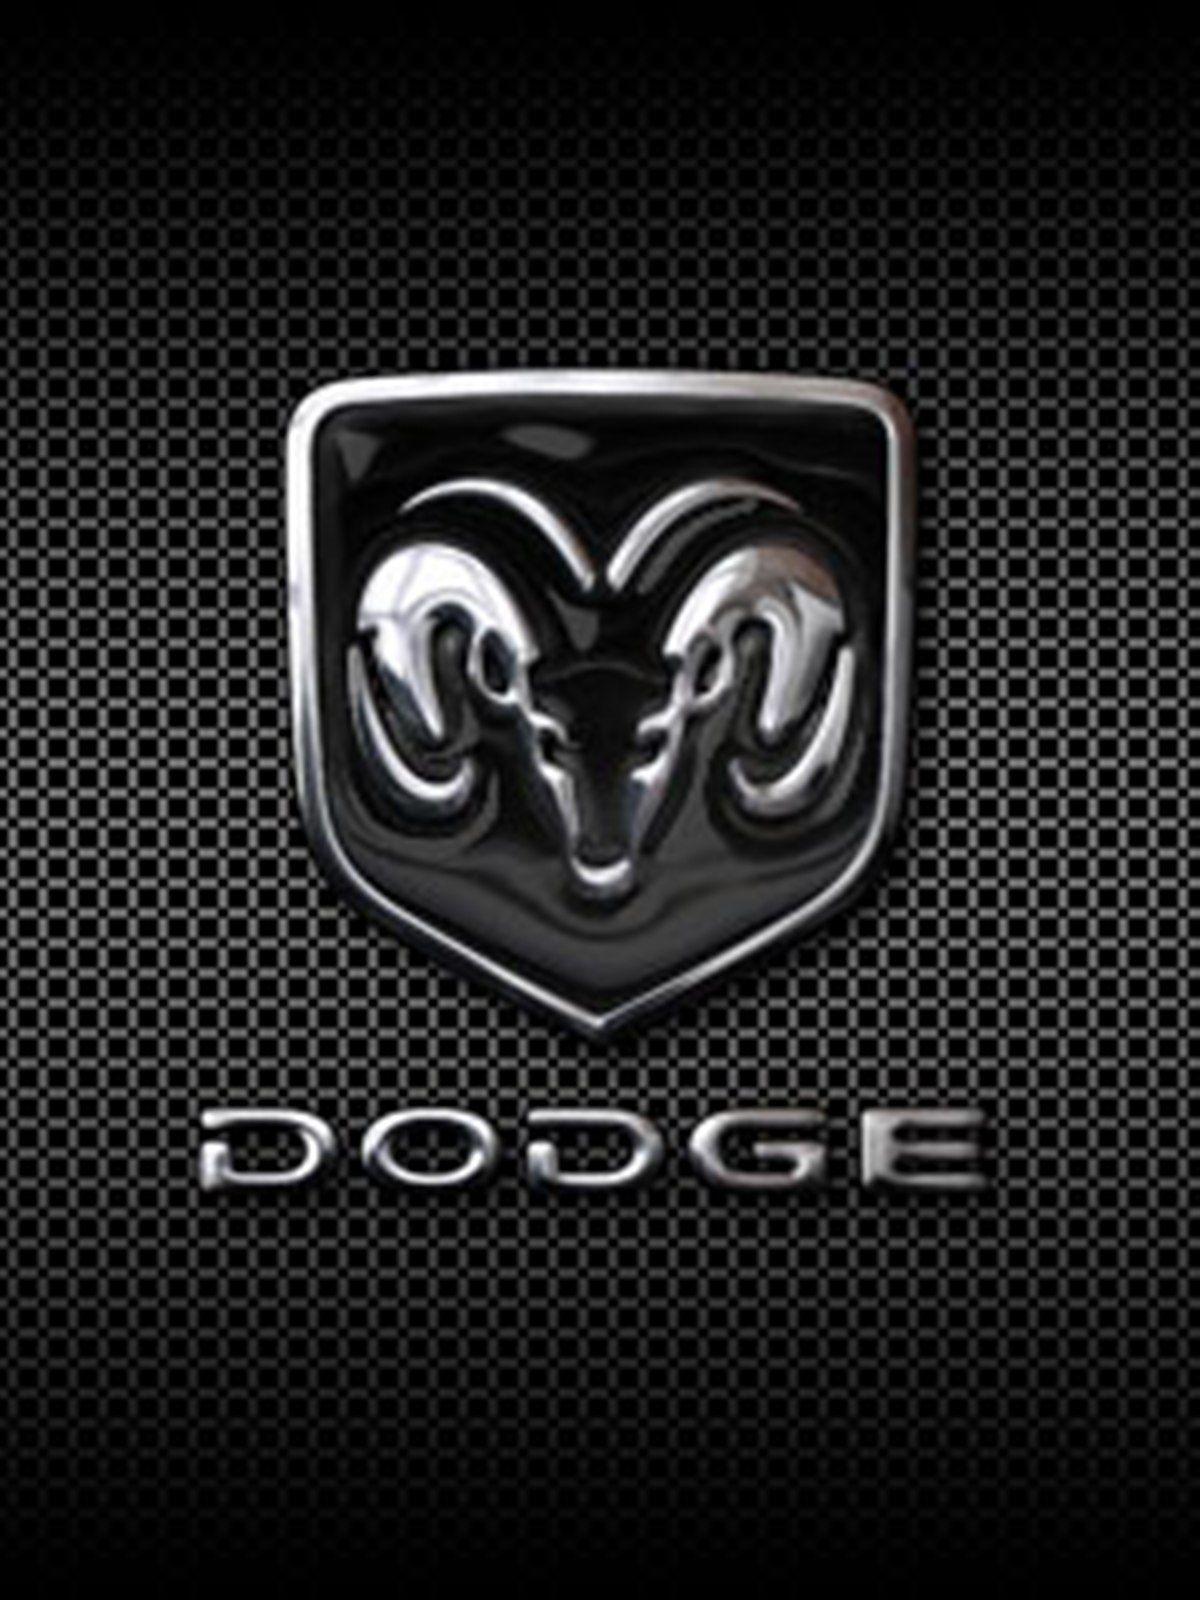 Dodge Ram Iphone Wallpapers